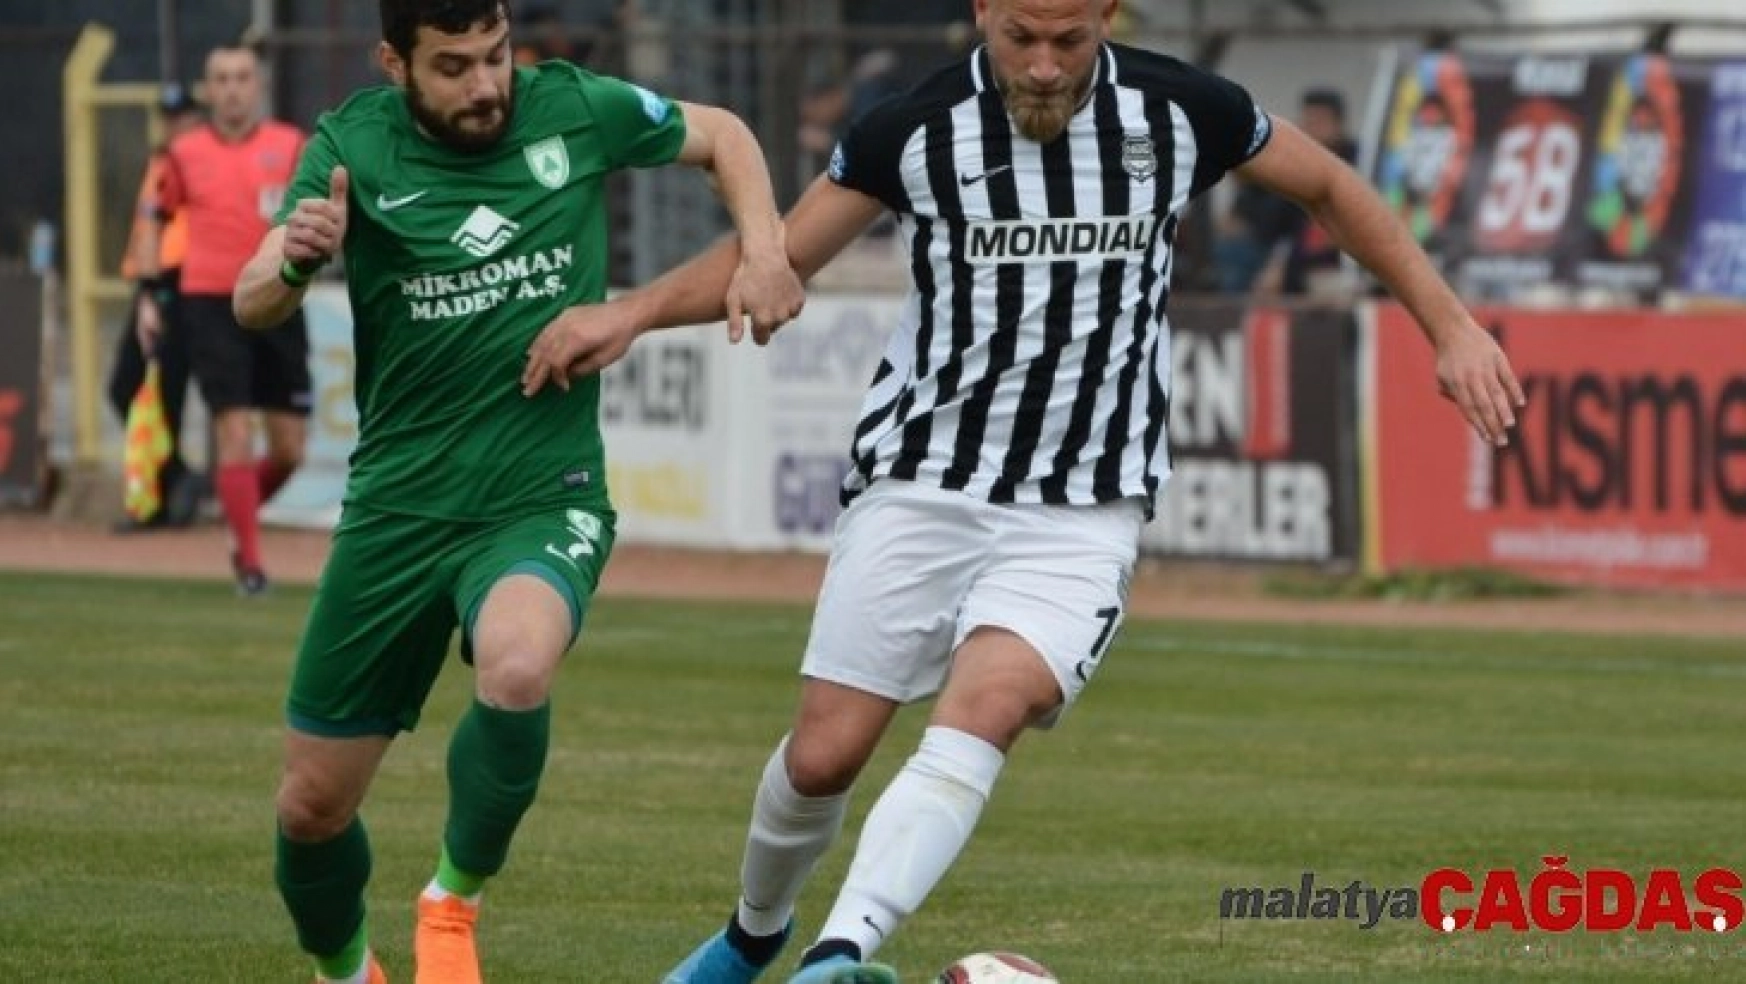 TFF 3. Lig: Nazilli Belediyespor: 1 - Muğlaspor: 3